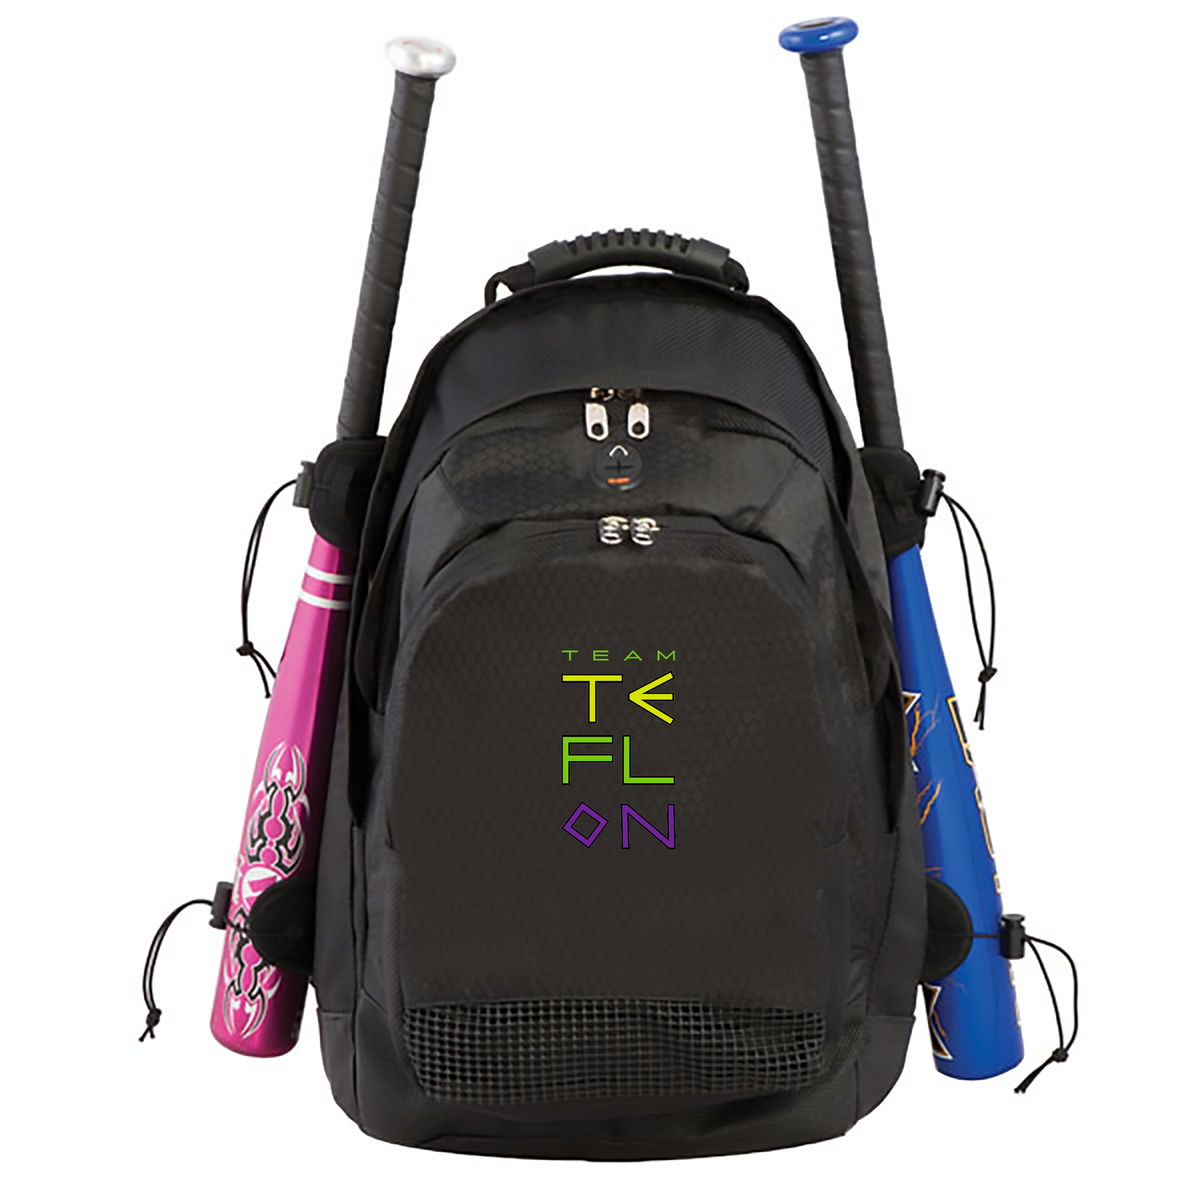 Team Teflon Deluxe Sports Backpack